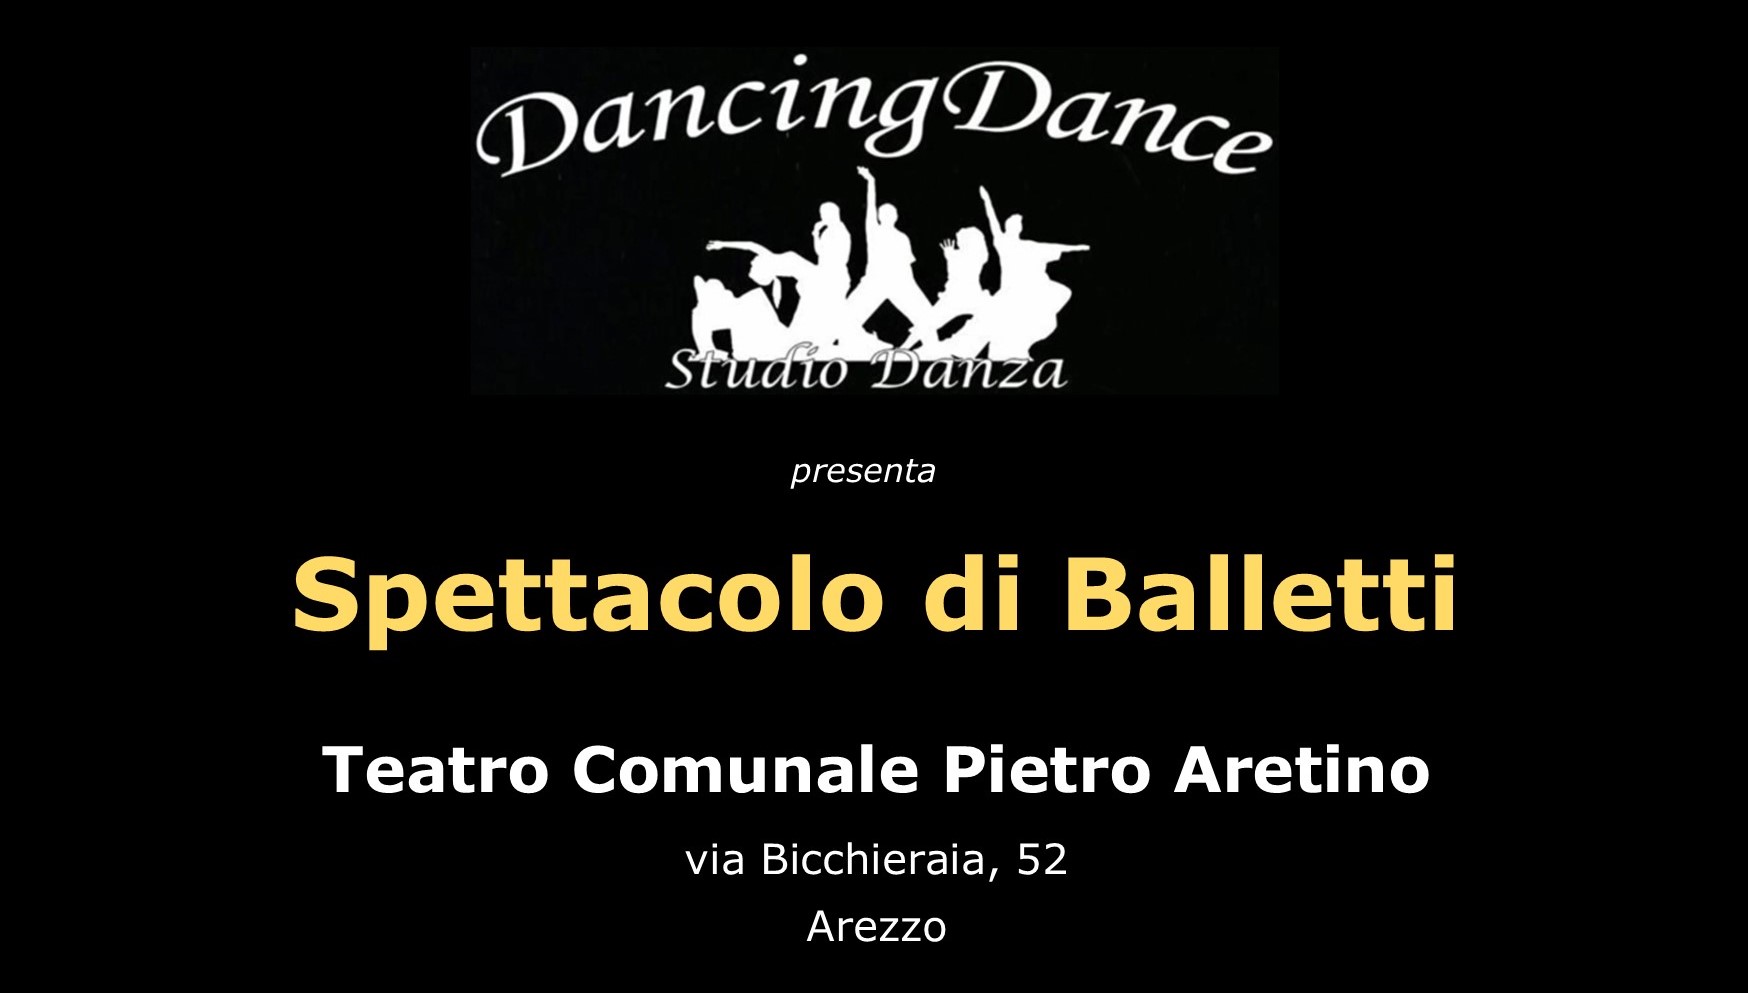 Saggio di fine anno per la DancingDance Studio Danza di Arezzo